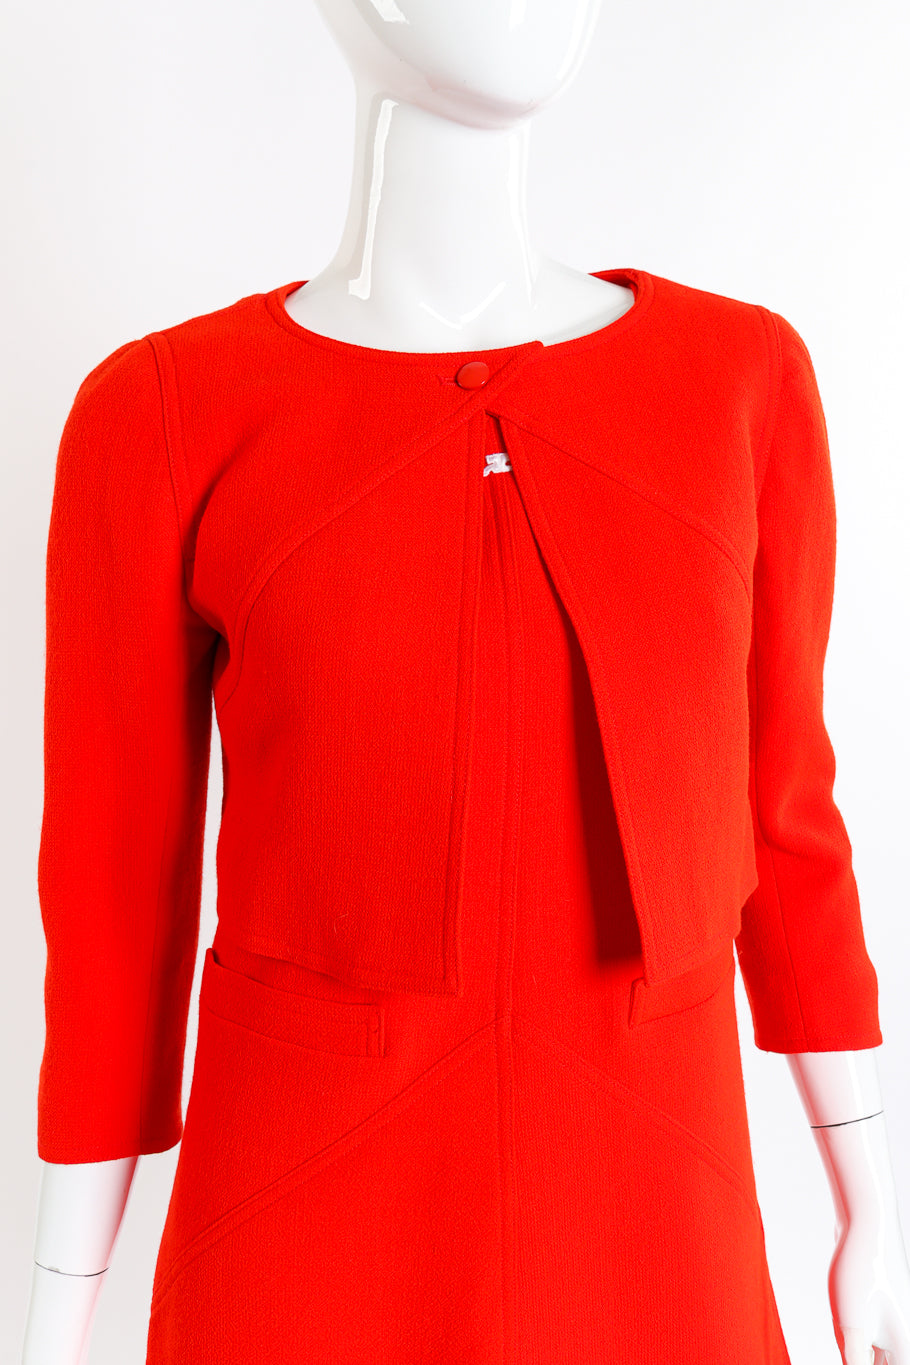 Courréges Mod Wool Jacket and Dress Set front on mannequin closeup @recessla